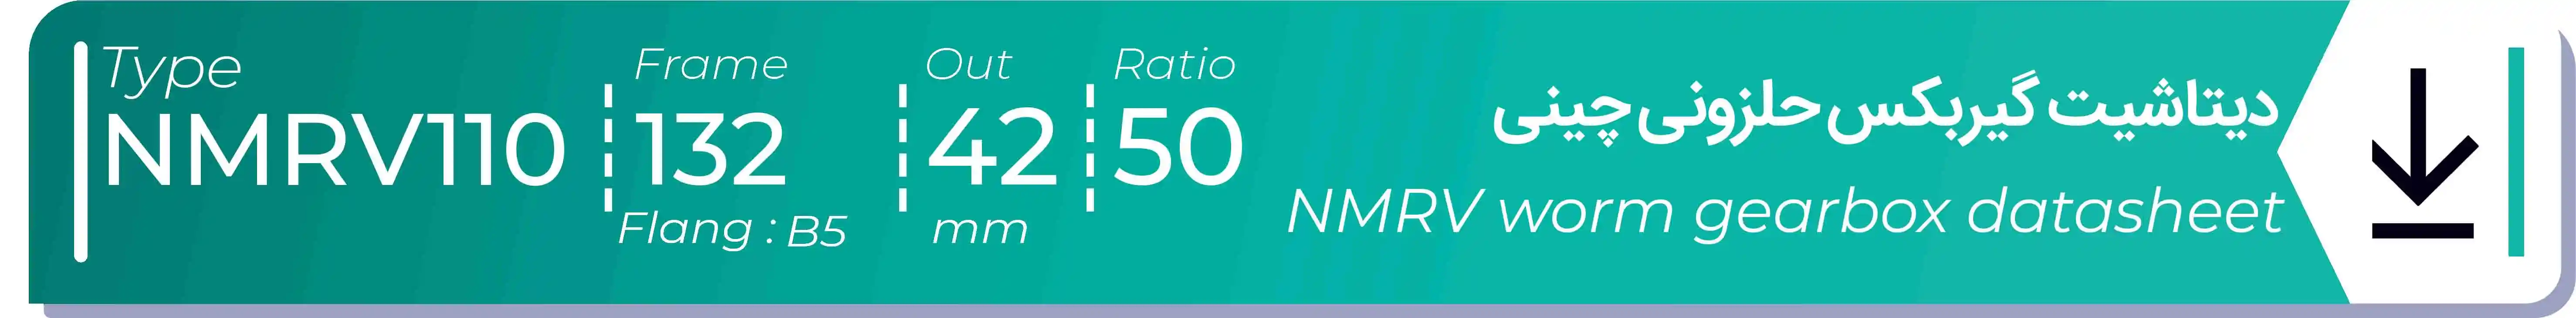  دیتاشیت و مشخصات فنی گیربکس حلزونی چینی   NMRV110  -  با خروجی 42- میلی متر و نسبت50 و فریم 132